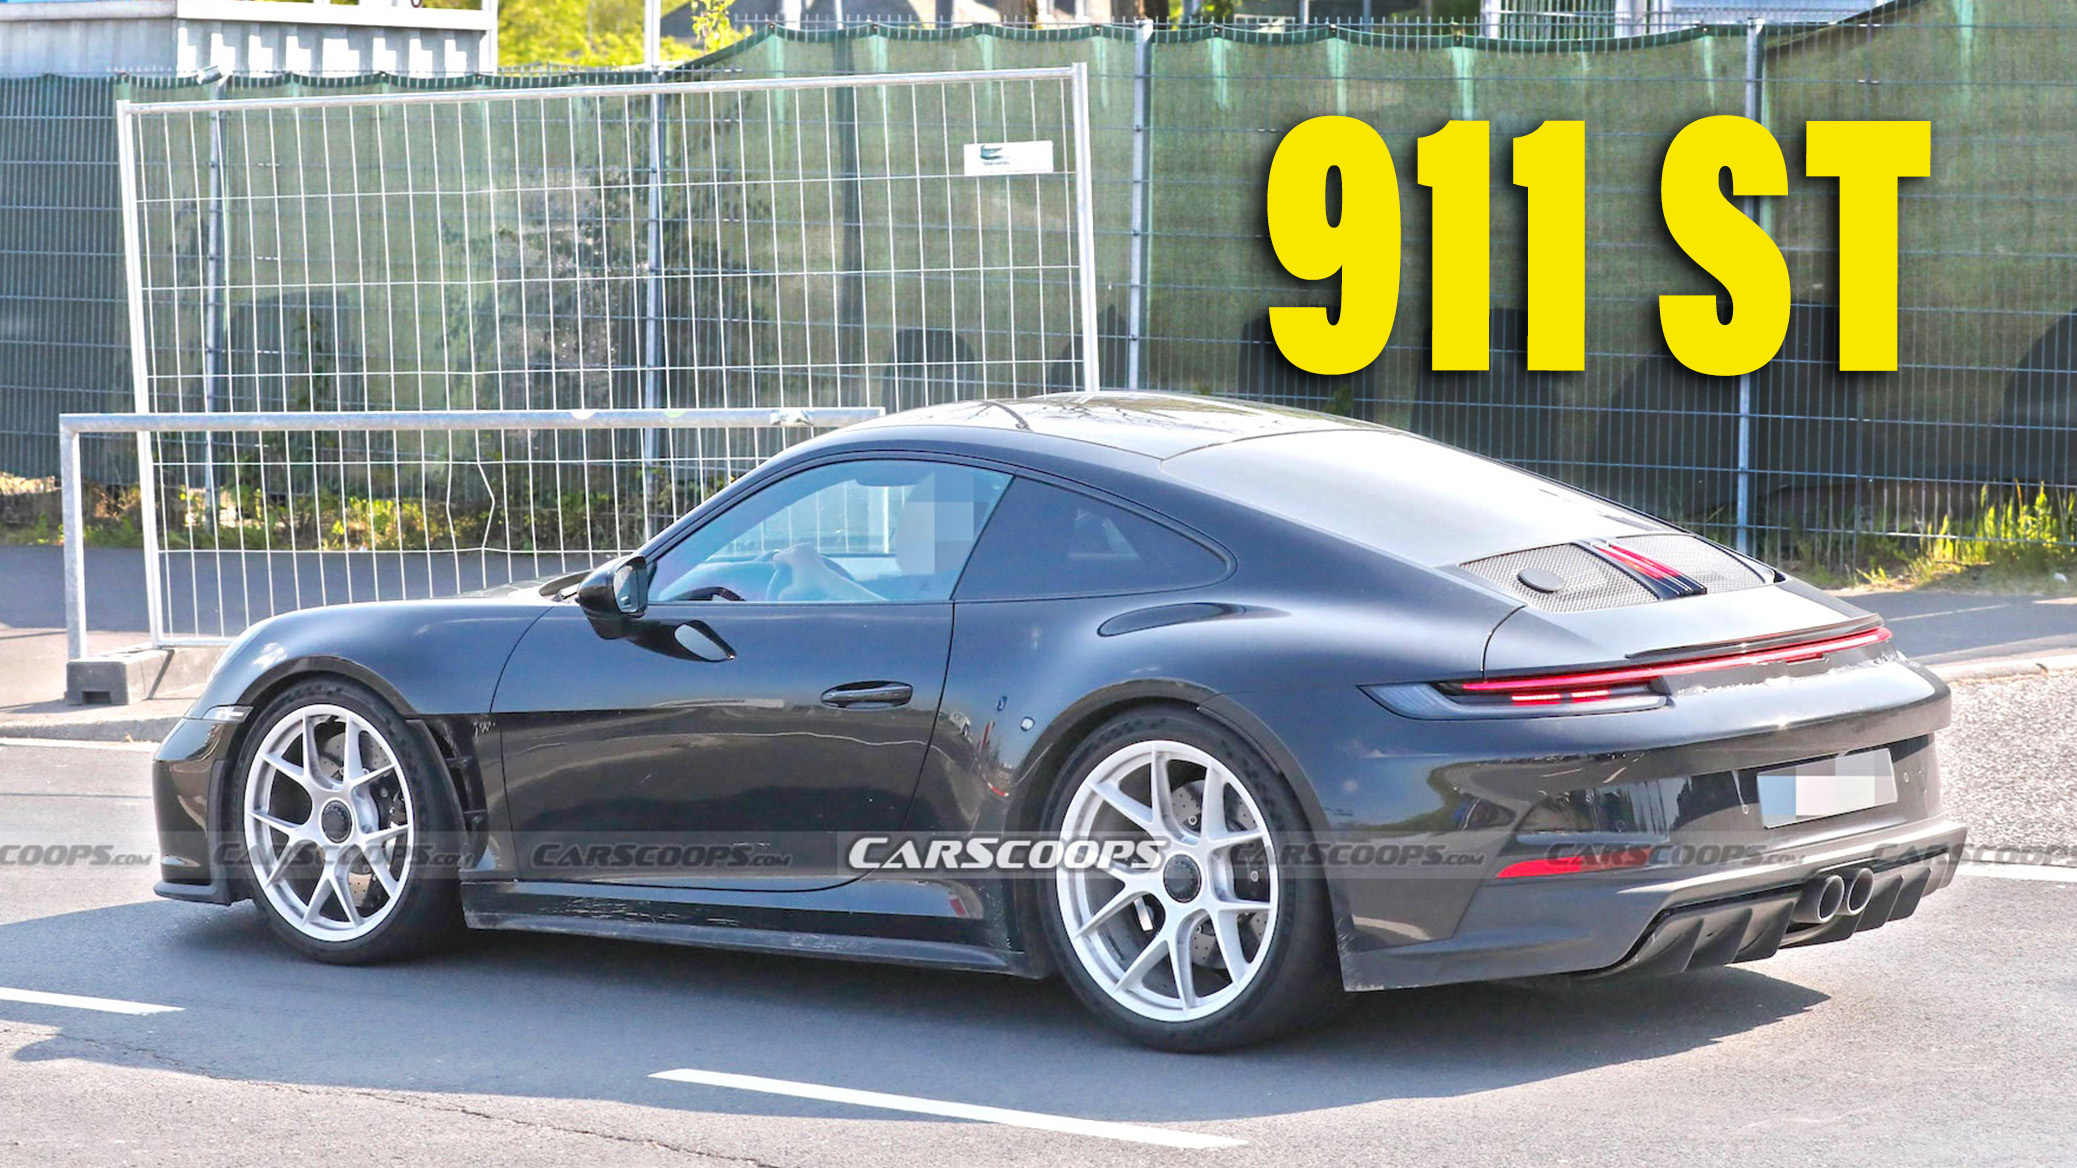 Undisguised Porsche 911 ST Reveals Its Aero Secrets